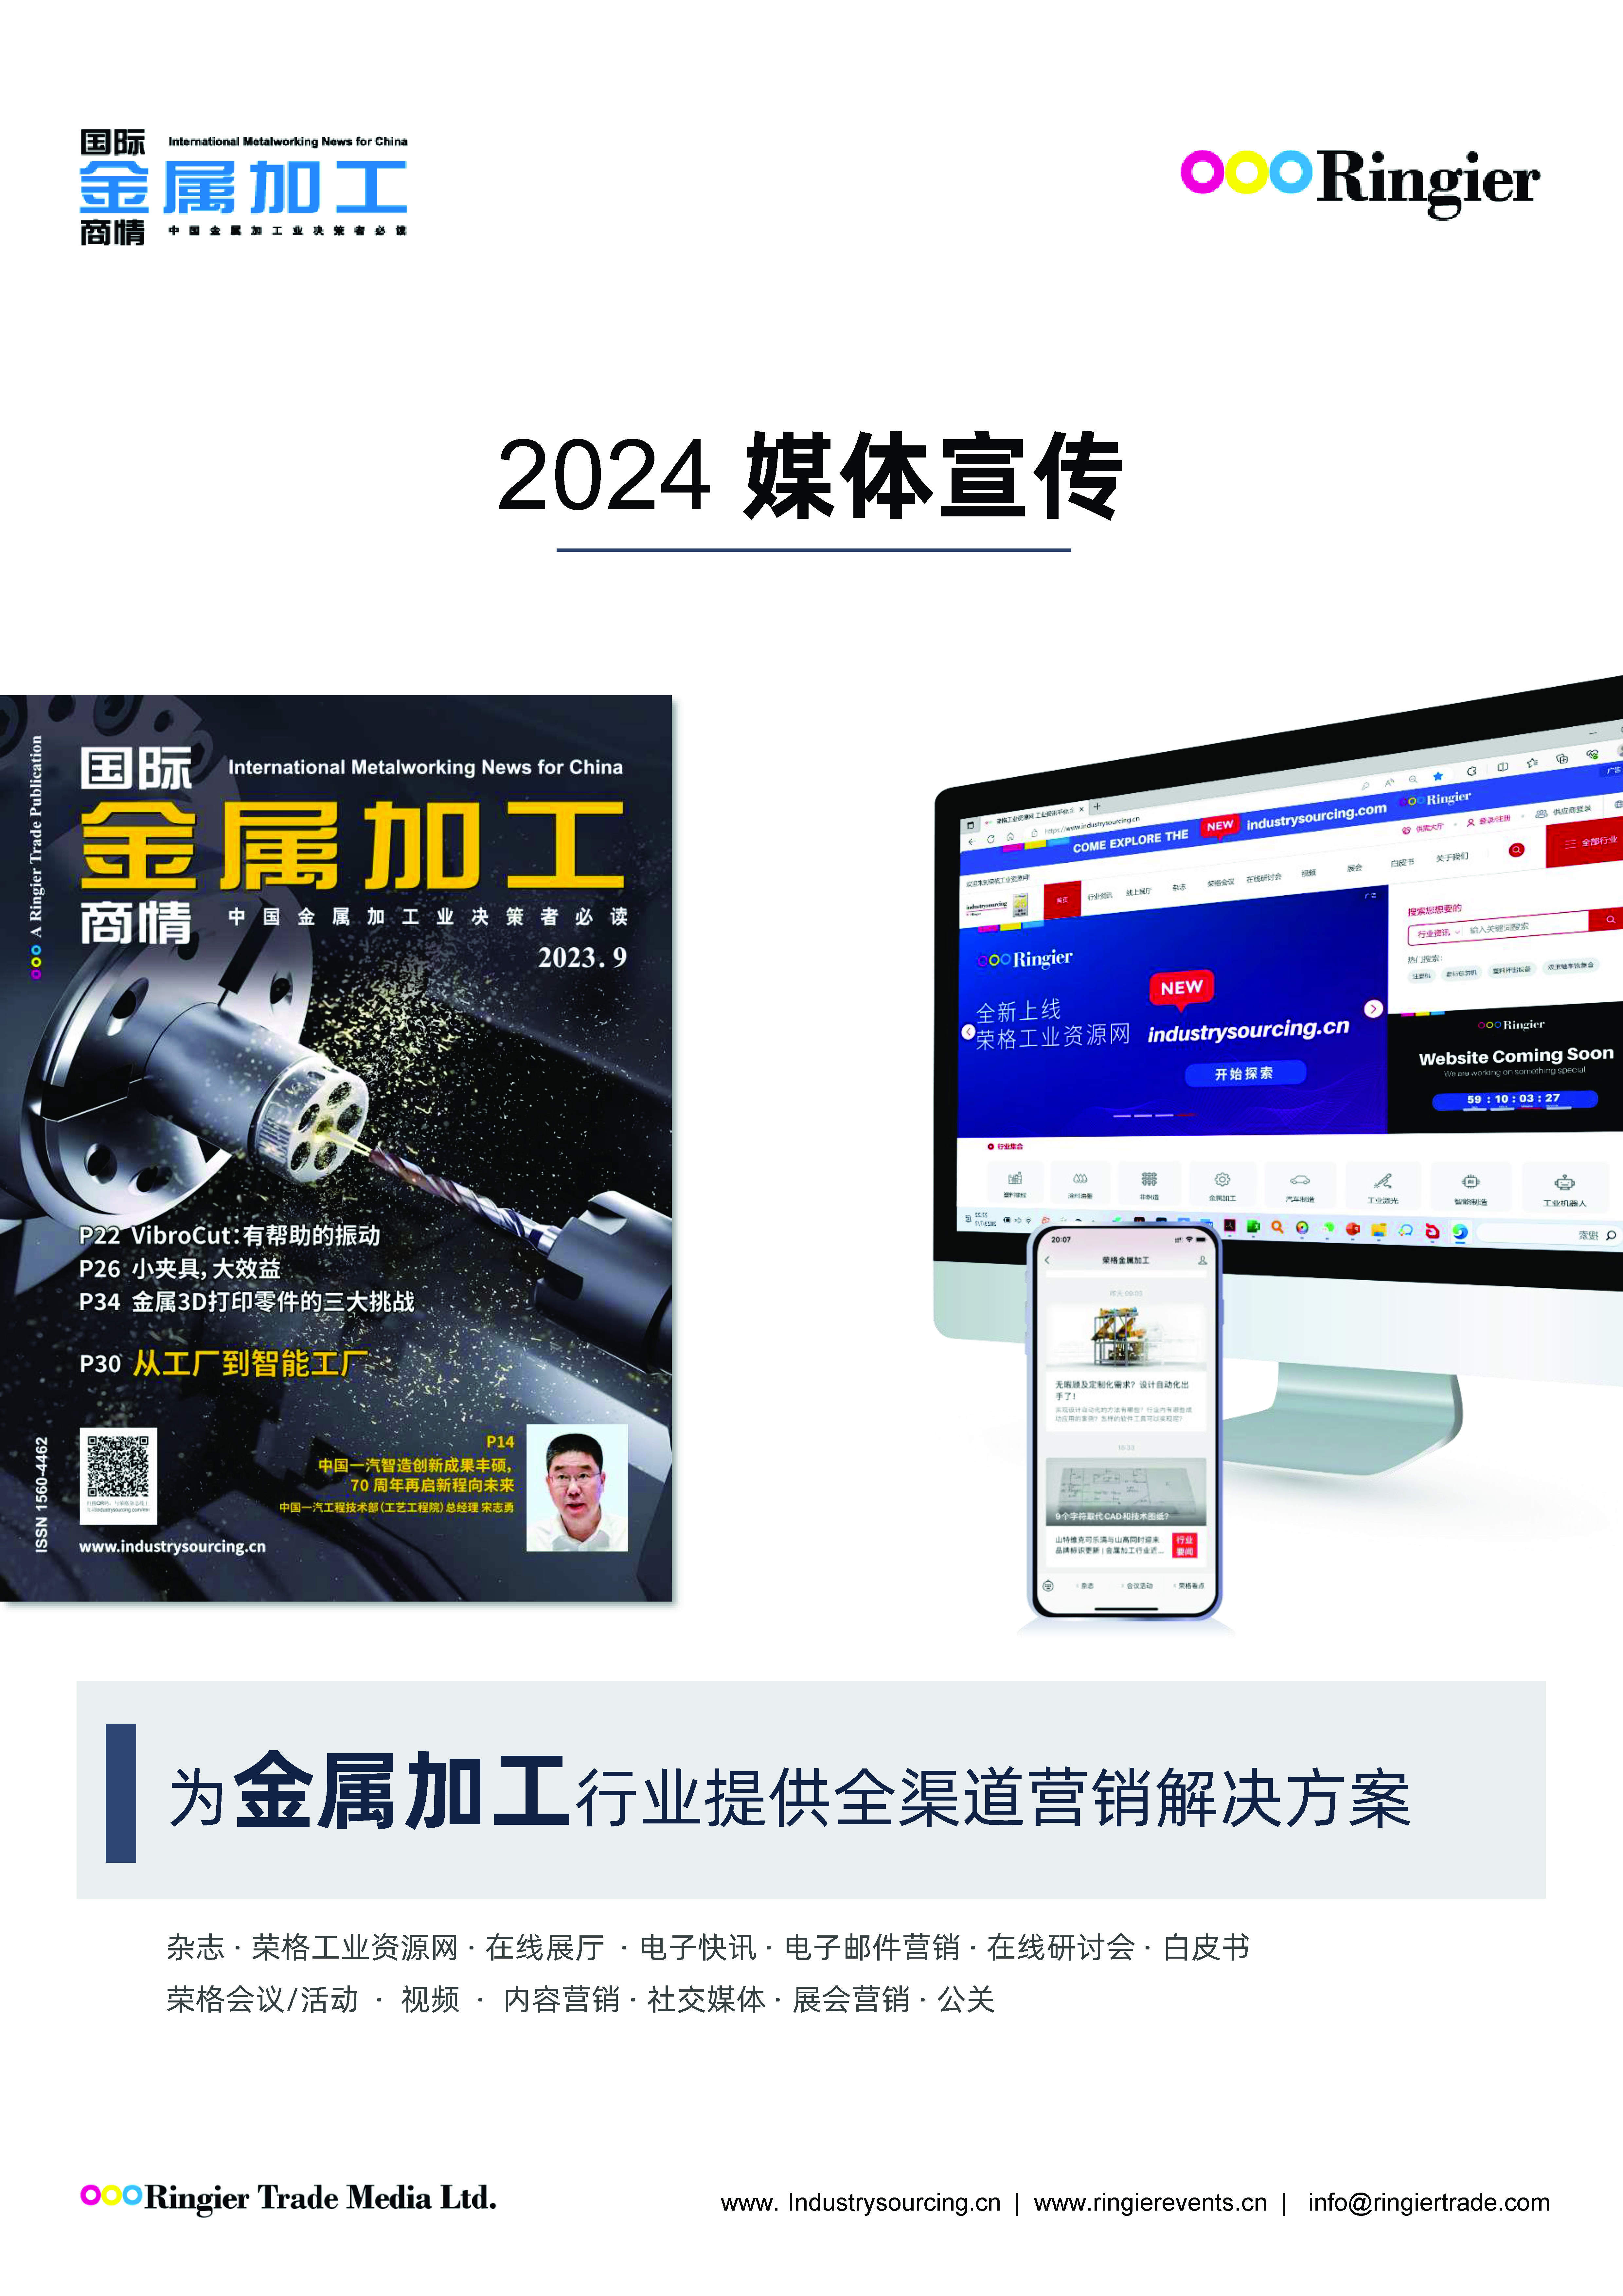 2024 國際金屬加工商情 Media kit